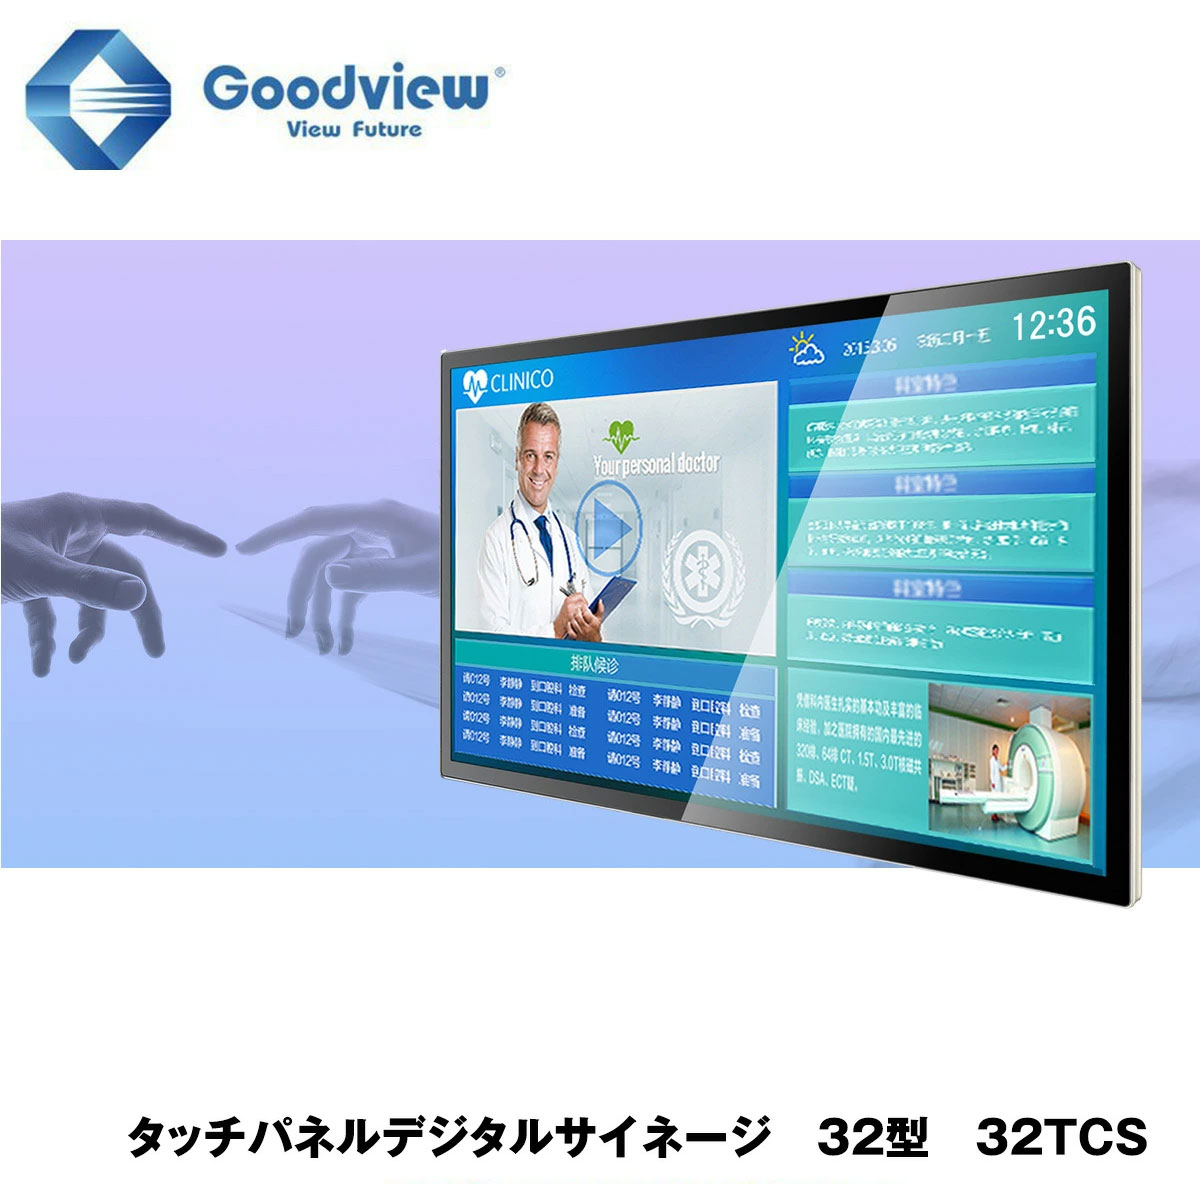 Goodview デジタルサイネージ タッチパネルサイネージ 400カンデラ 32型【32TCS】